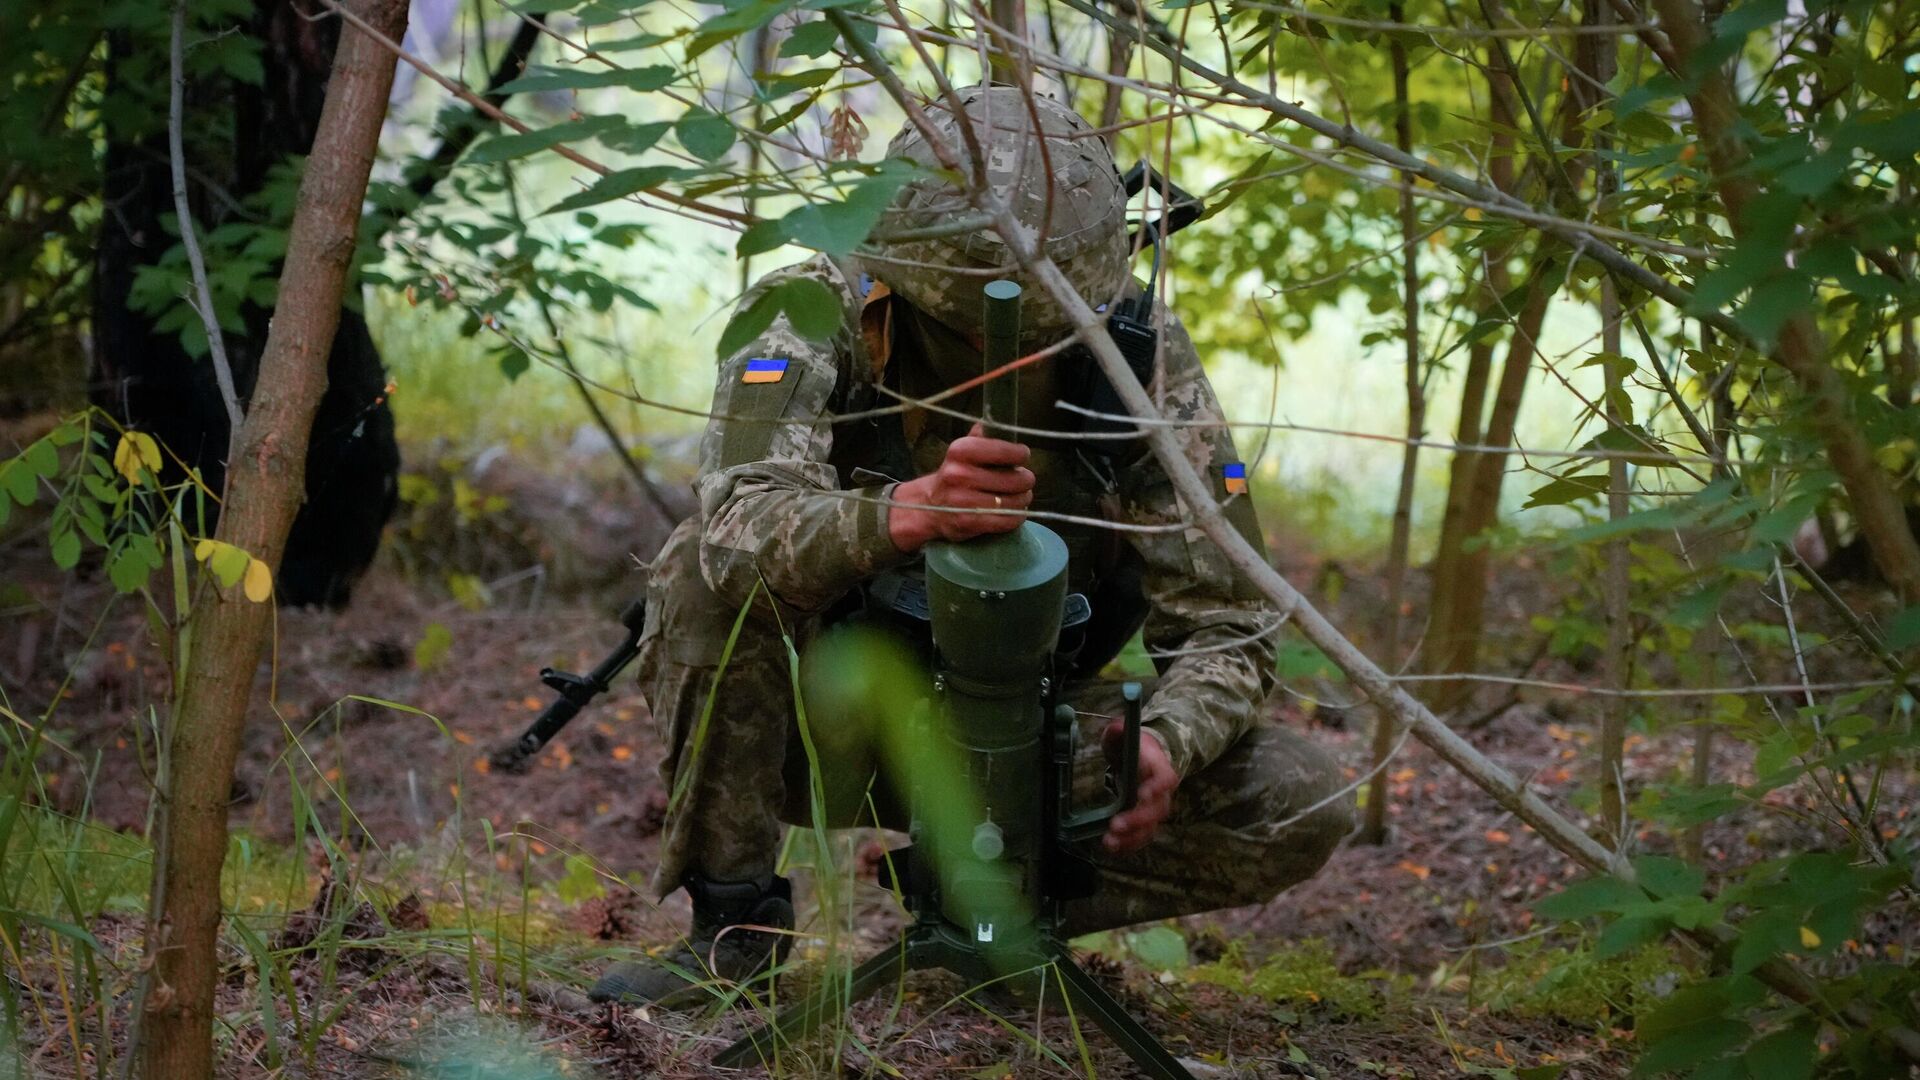 Солдат спецподразделения Украины устанавливает немецкую противотанковую мину направленного действия DM22 в Донецкой области - РИА Новости, 1920, 30.09.2022